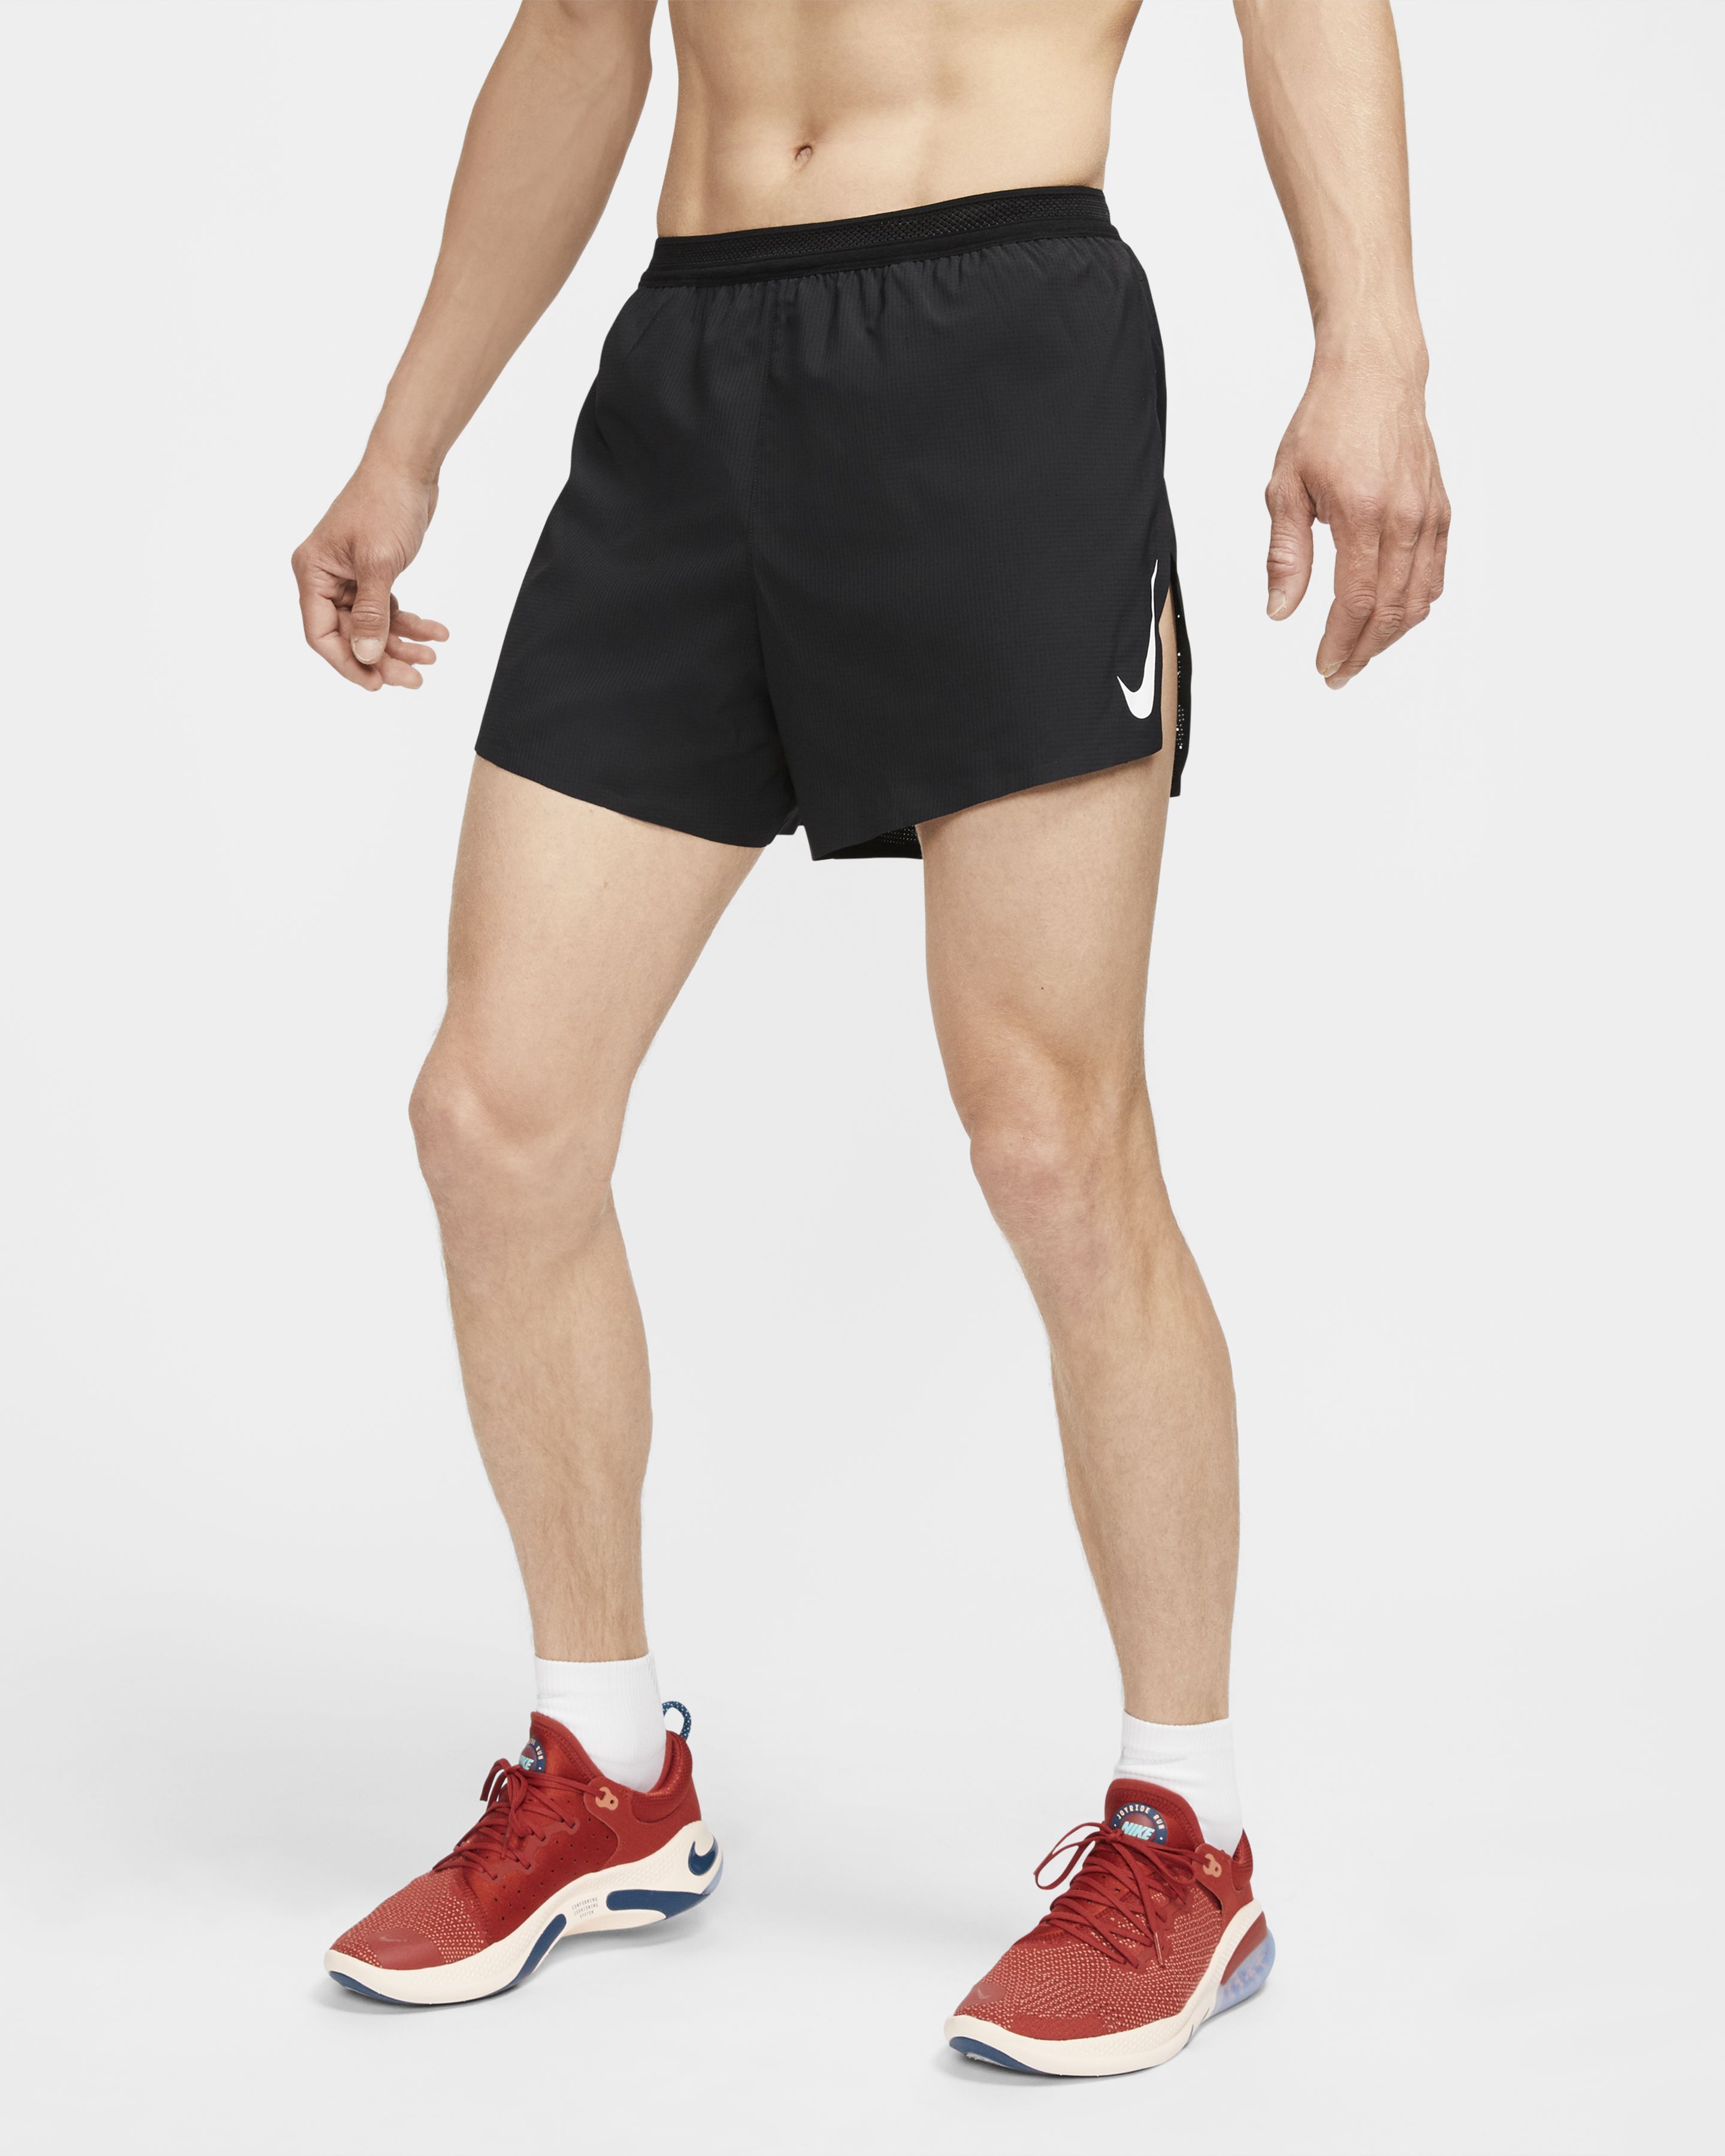 jogging shorts mens